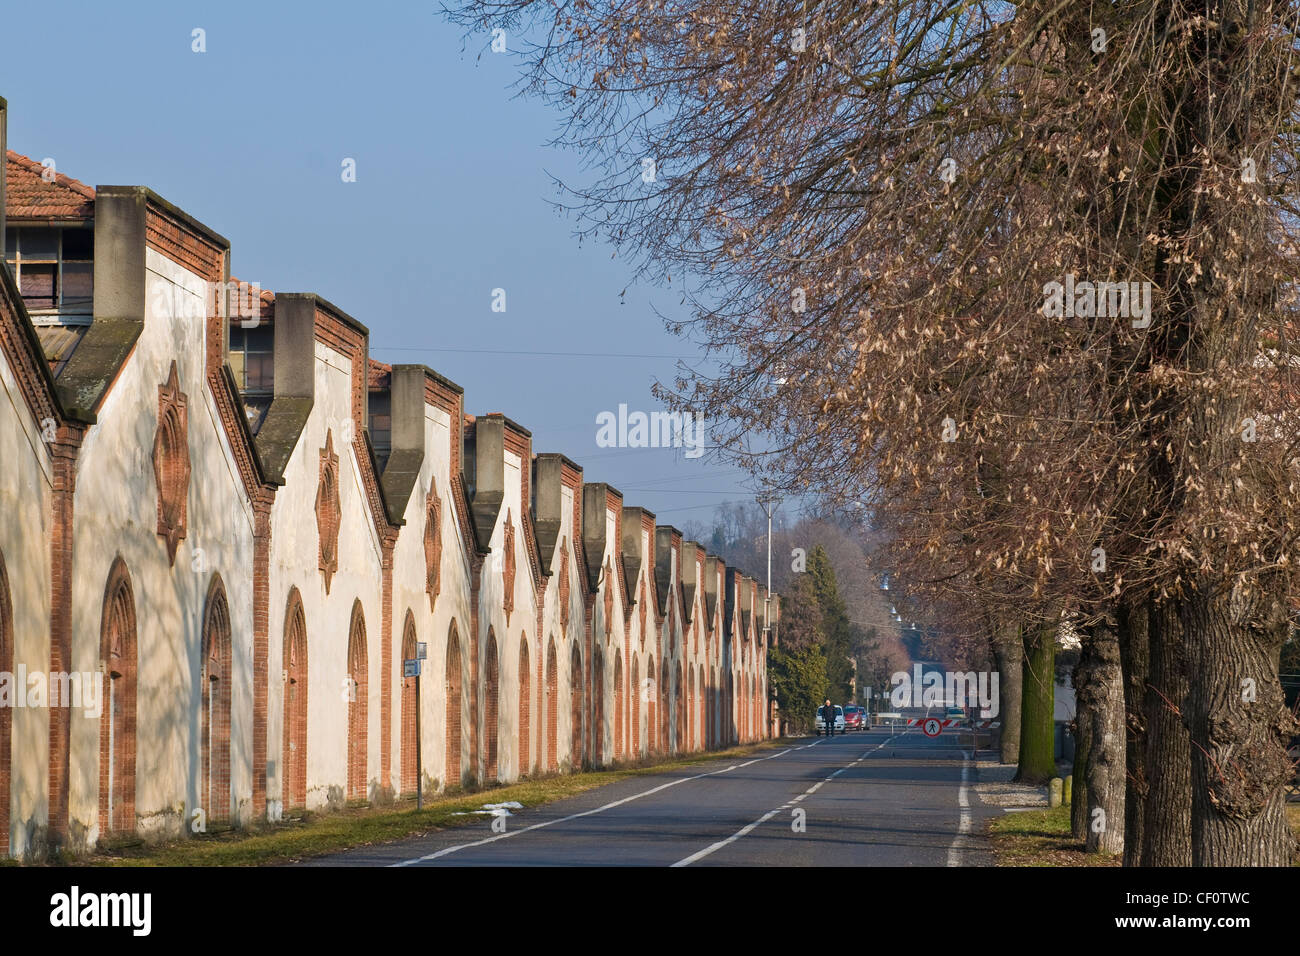 Crespi d'Adda, UNESCO, Lombardy, Italy Stock Photo